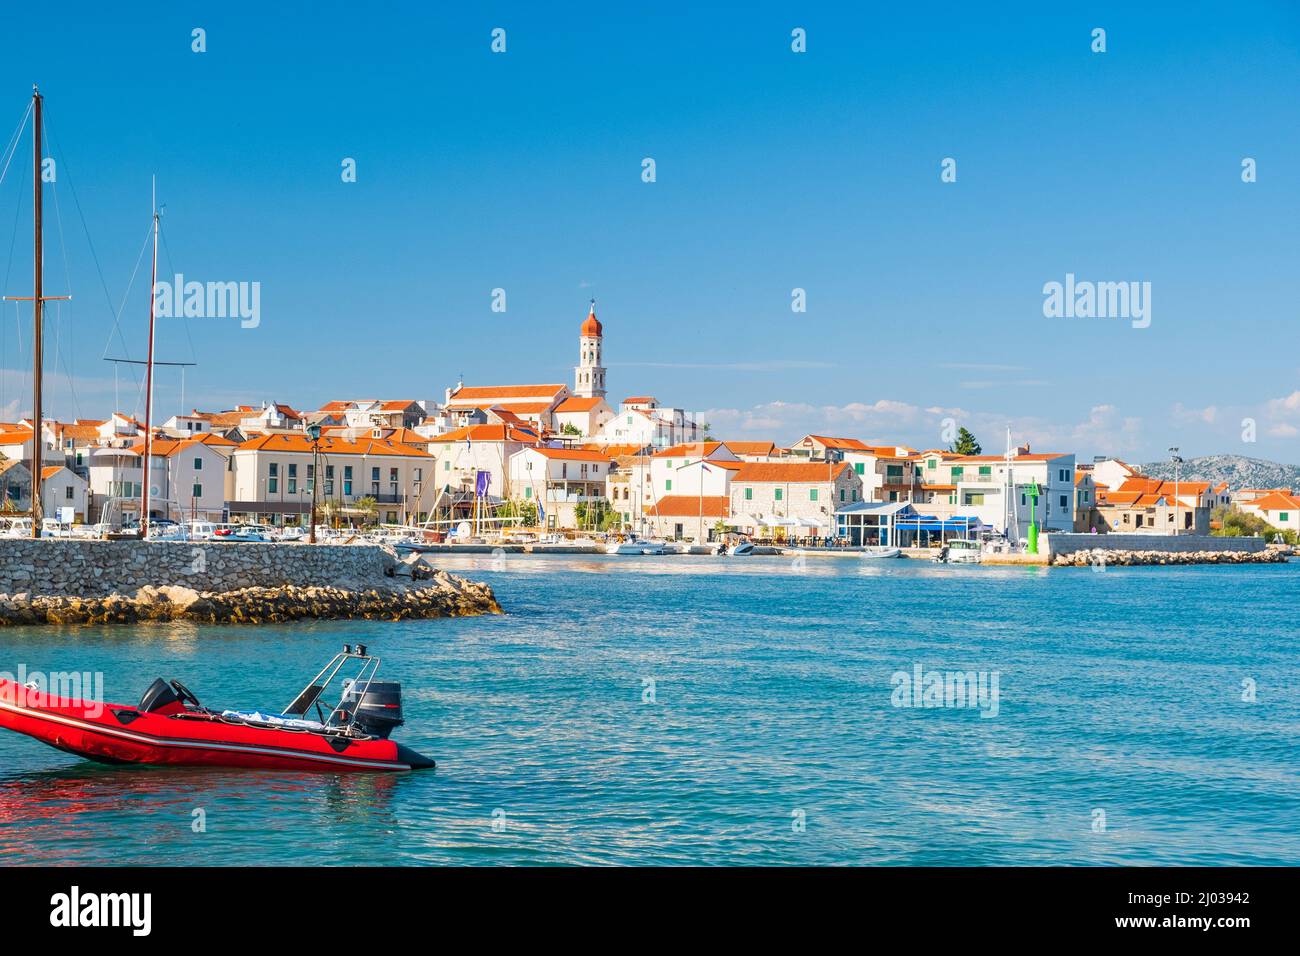 Marina dans la vieille ville de Betina sur l'île de Murter à Dalmatie, Croatie. Paysage de mer Adriatique. Banque D'Images